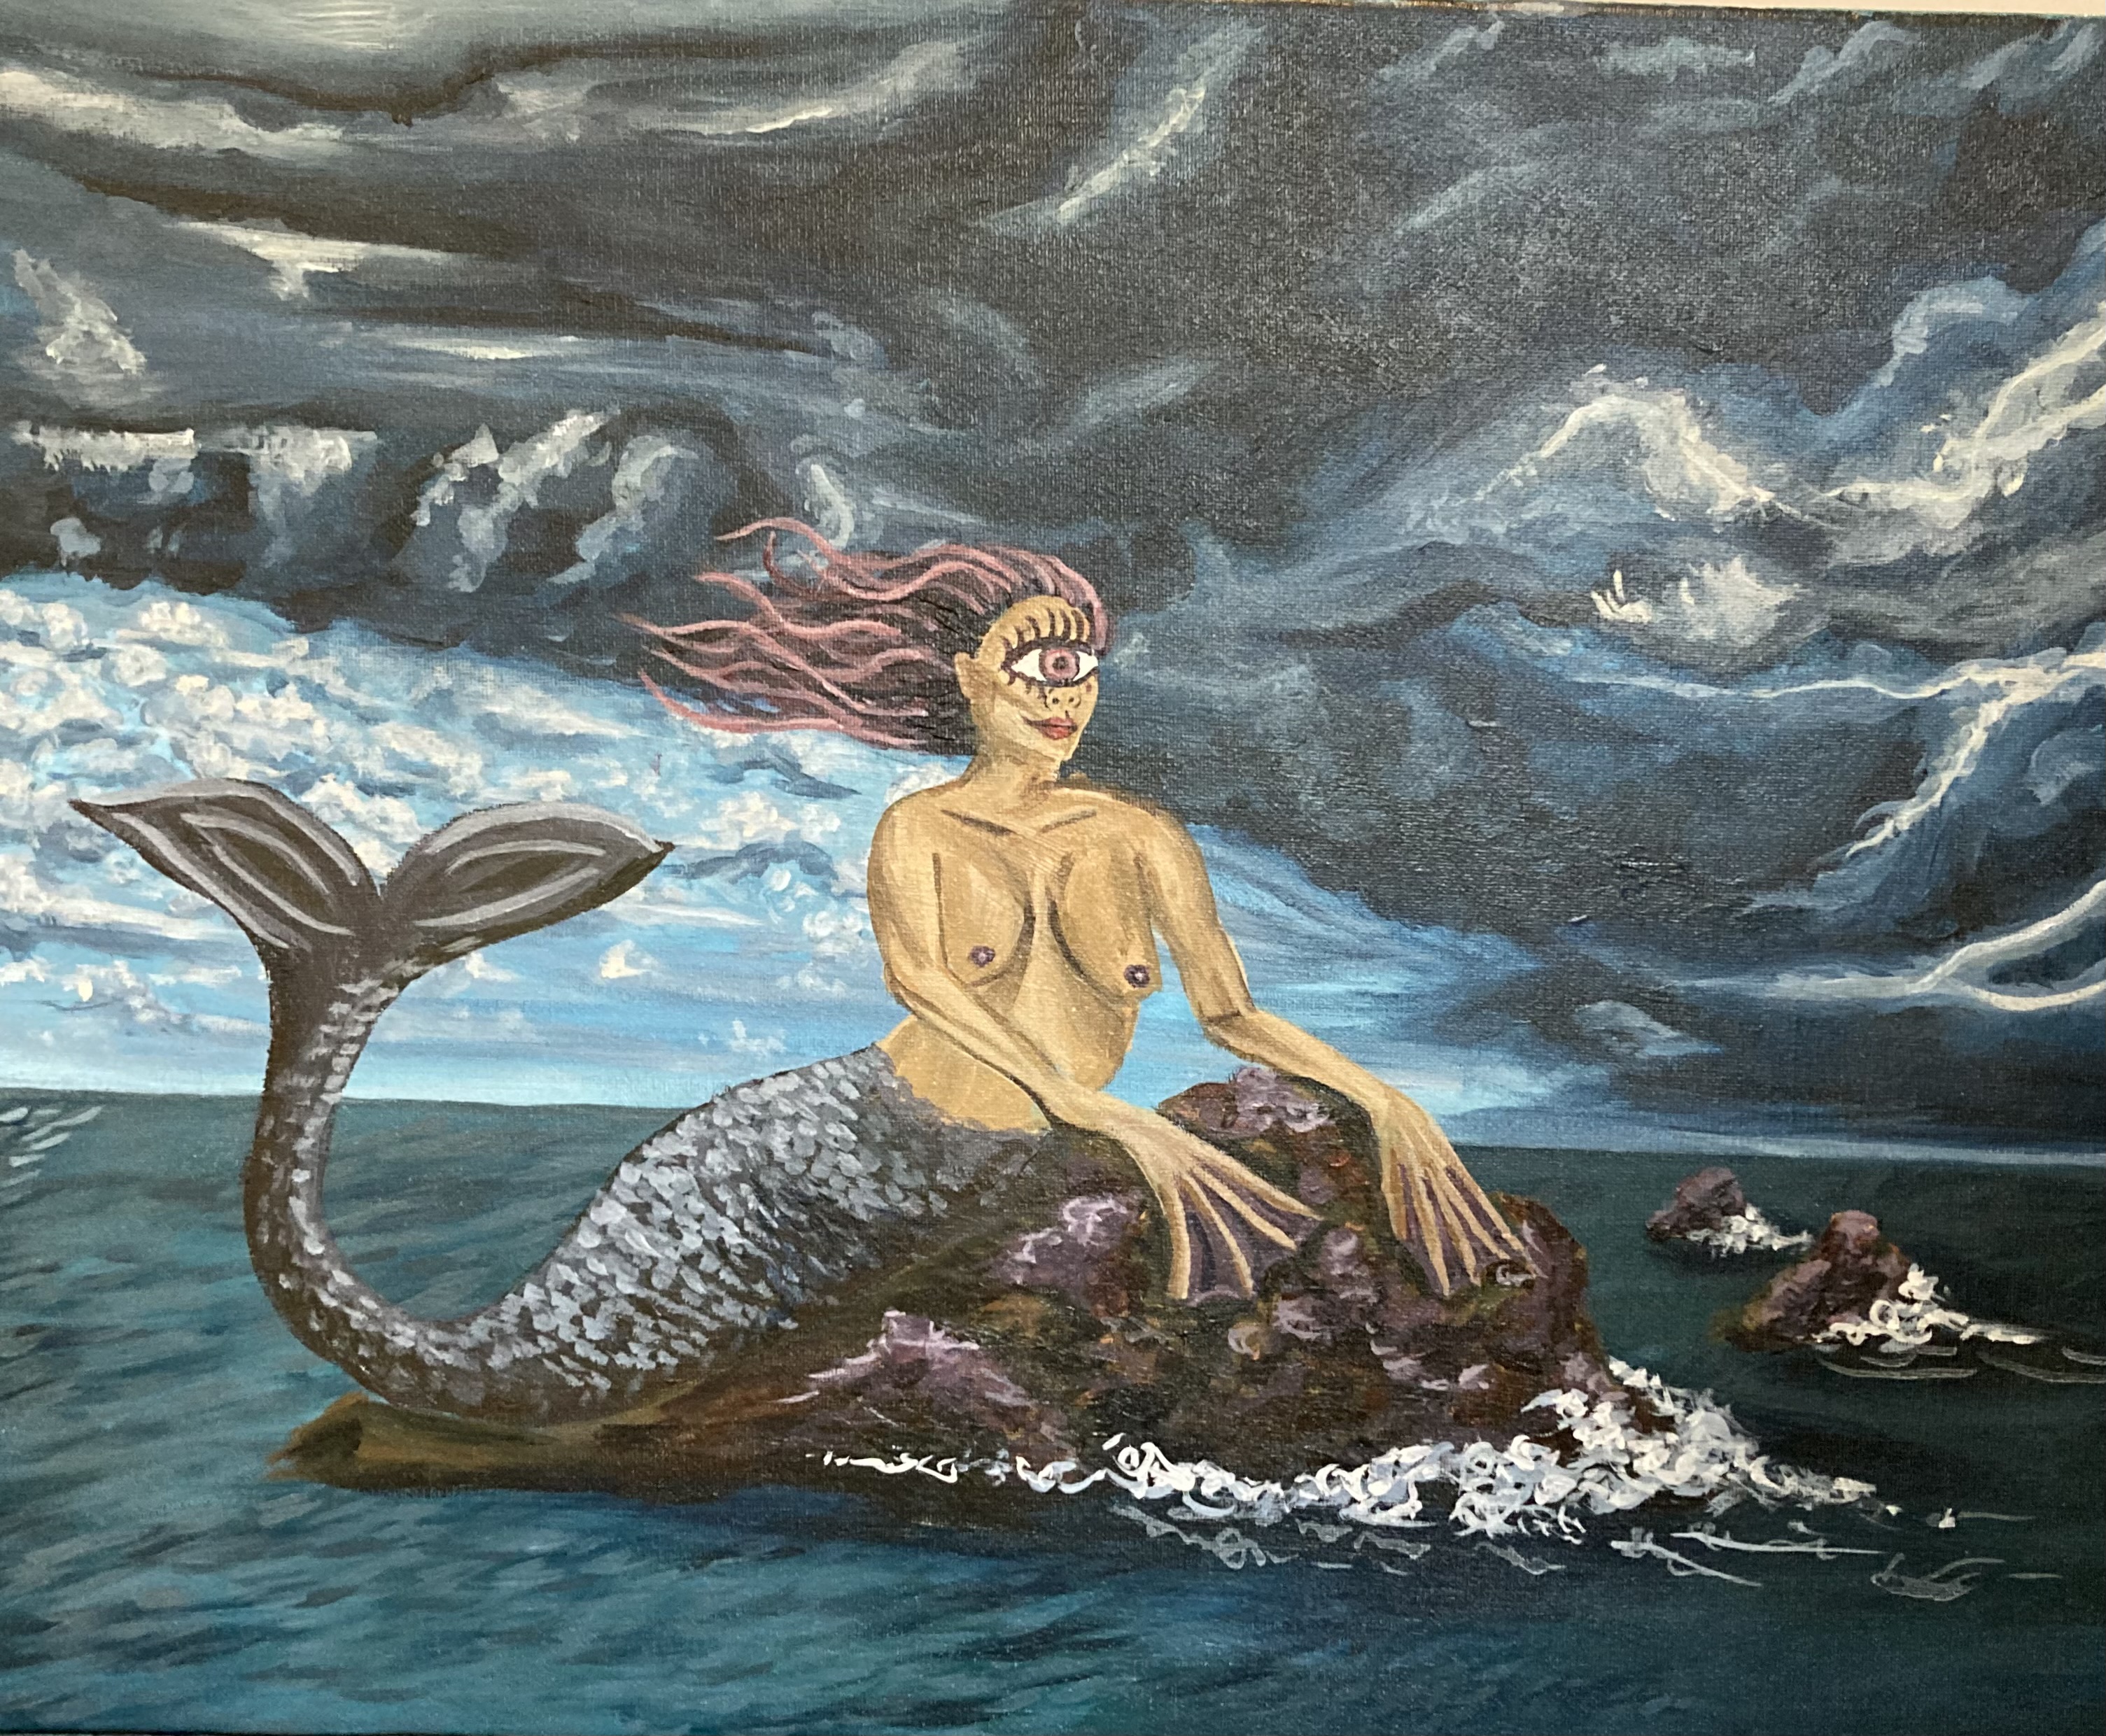 cyclops-mermaid-storm